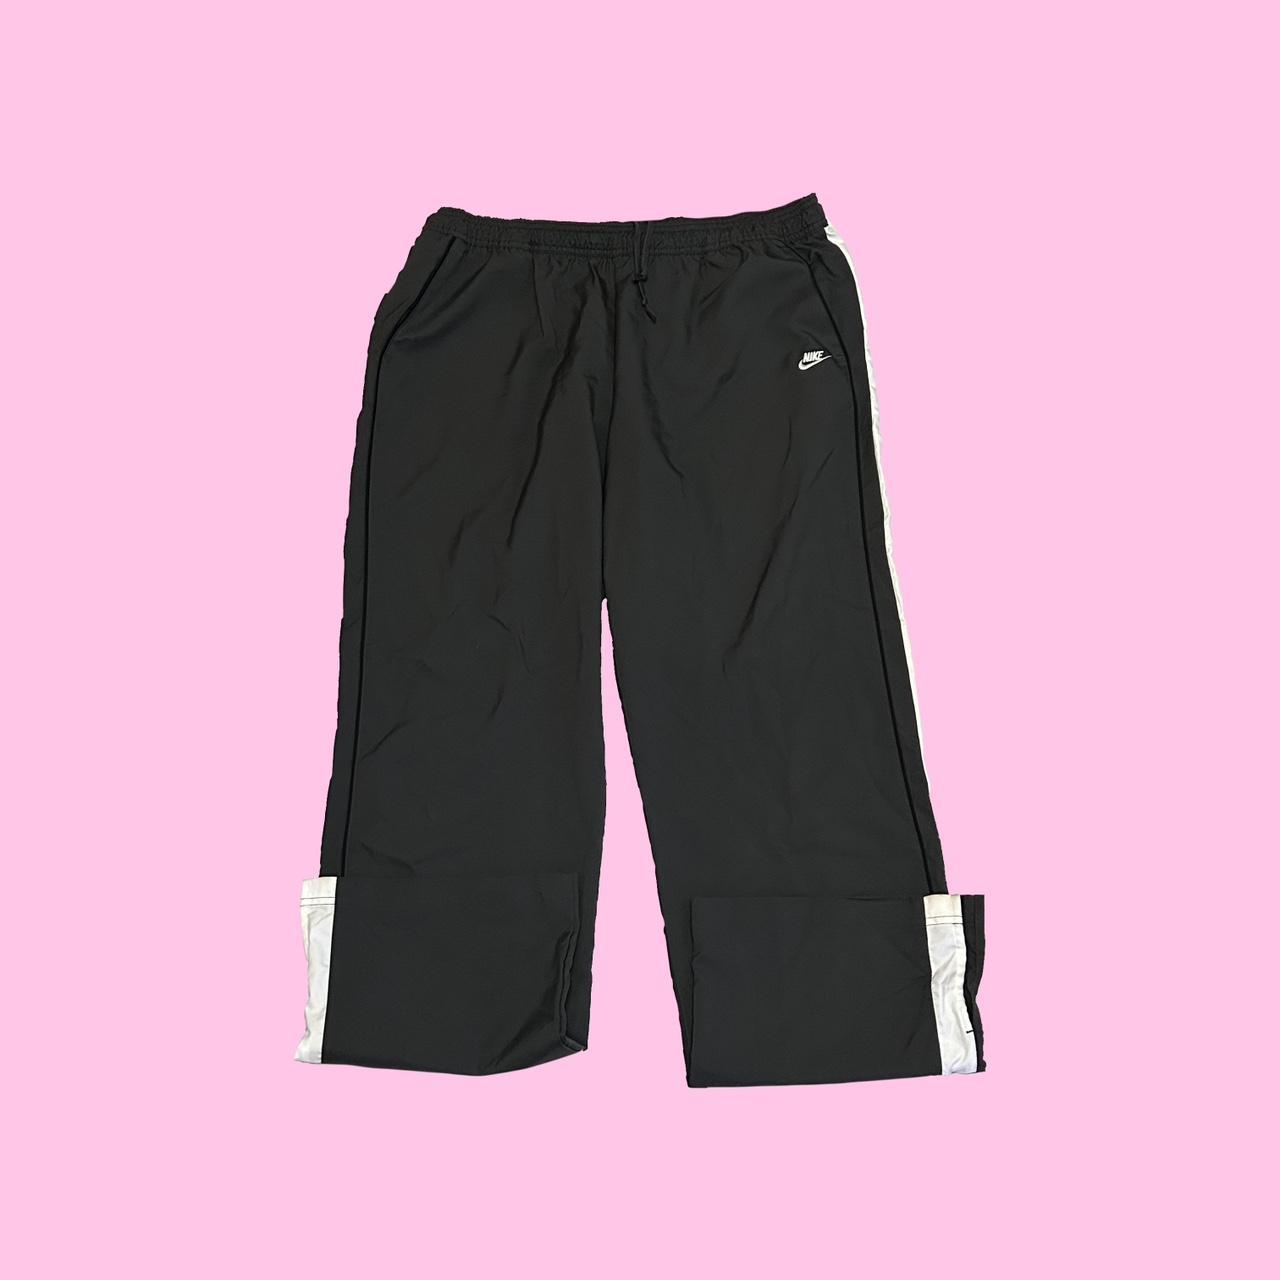 Y2k Nike track pants with side stripes model off - Depop